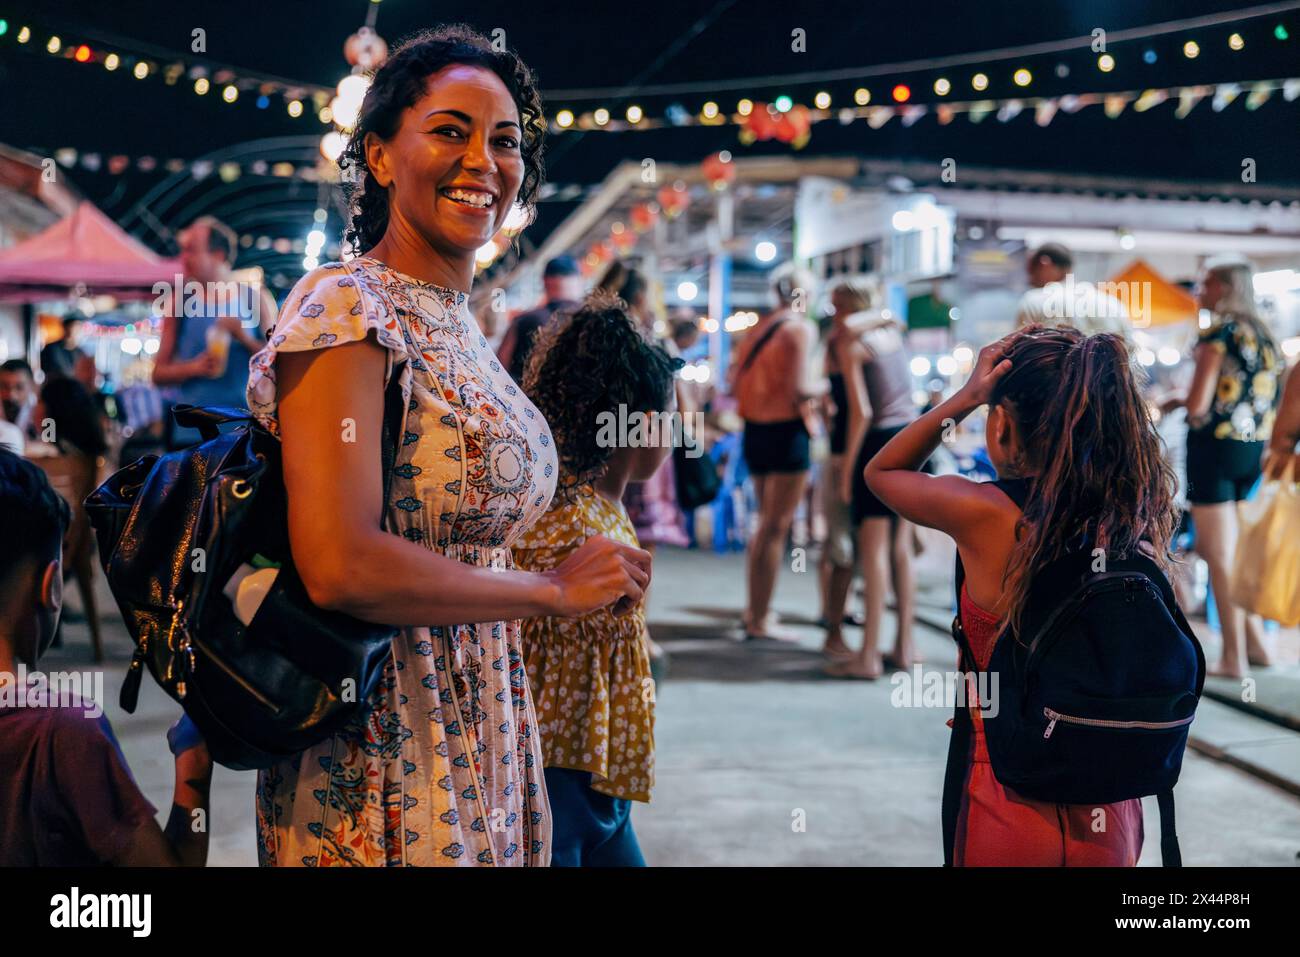 Vue de côté portrait de femme souriante explorant le marché alimentaire avec des enfants en vacances Banque D'Images